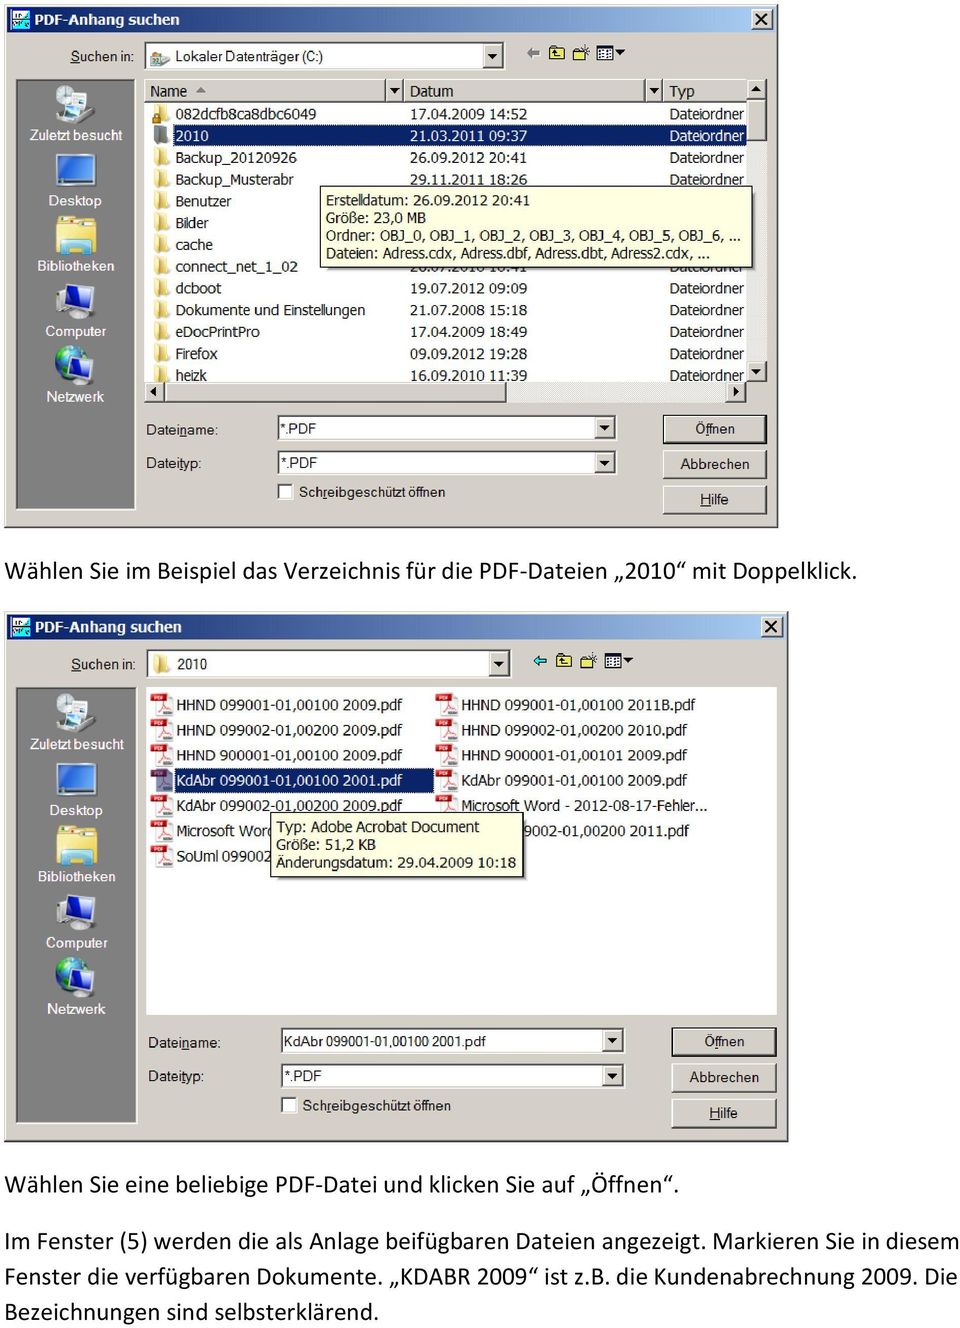 Im Fenster (5) werden die als Anlage beifügbaren Dateien angezeigt.